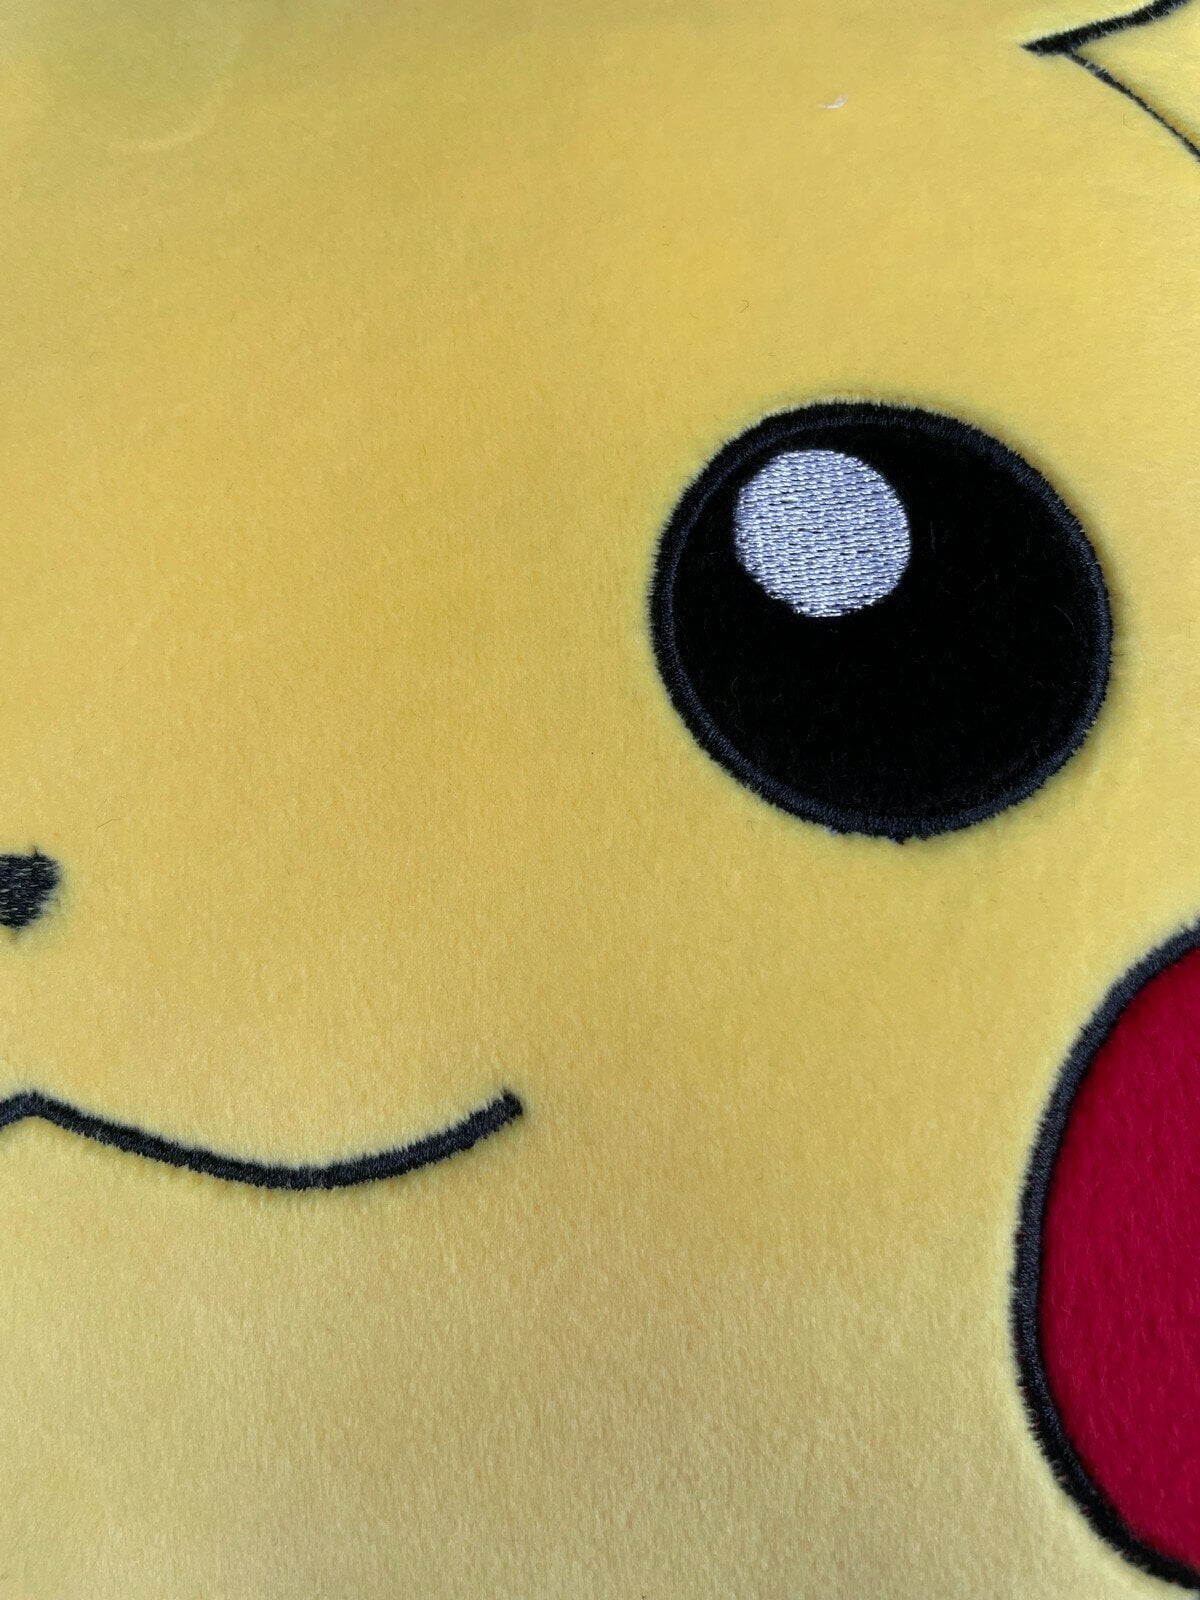 Pokémon - Tyyny Pikachu 40 x 40 cm